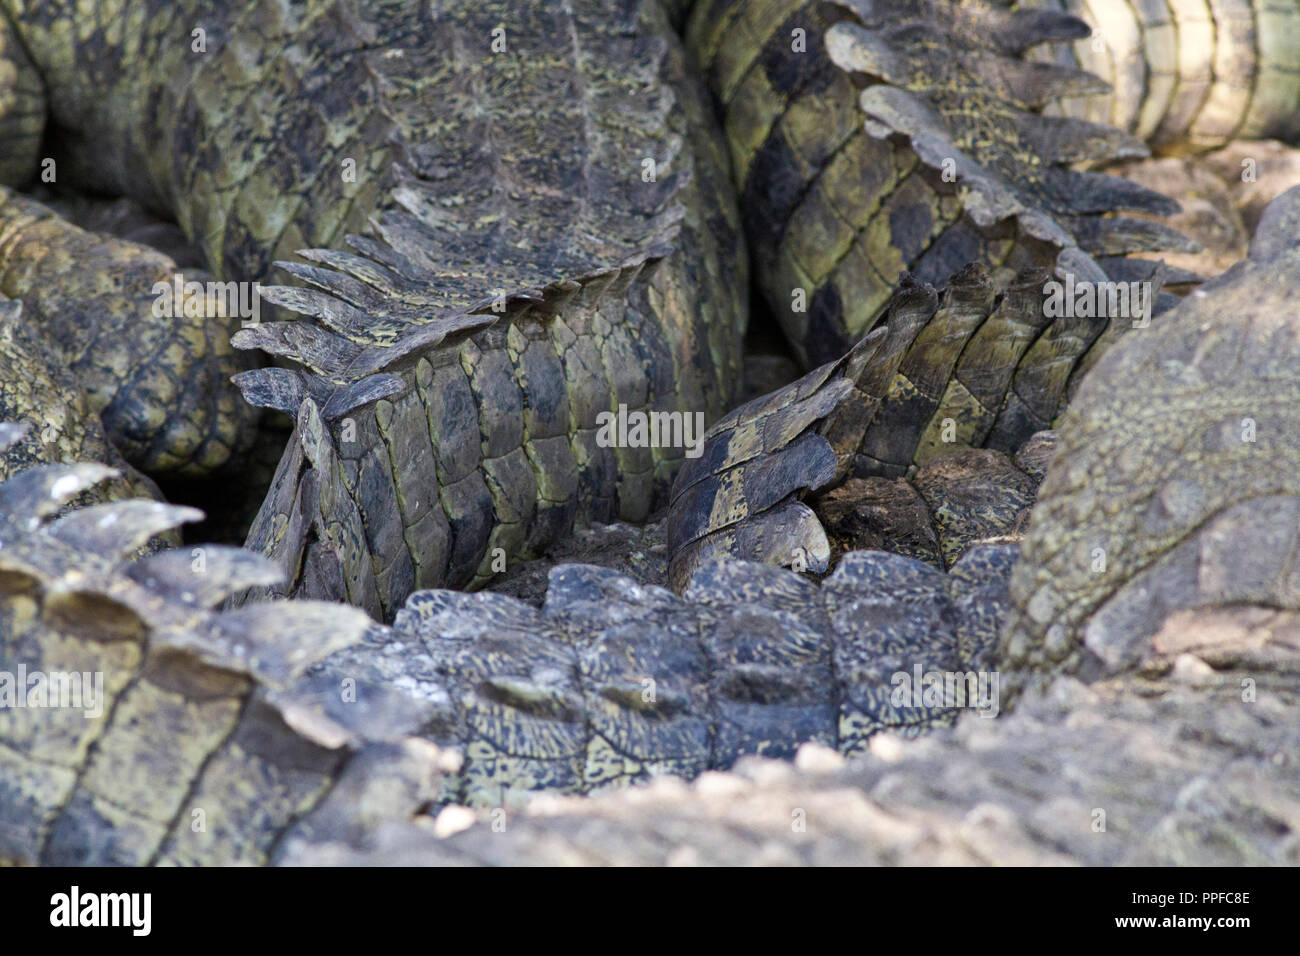 Wenn Höhlen gegraben werden dann Gruppen von Krokodilen in schattigen Bereichen häufen sich vor dem Austrocknen in der Sonne zu schützen, verbrachte Wochen Stockfoto